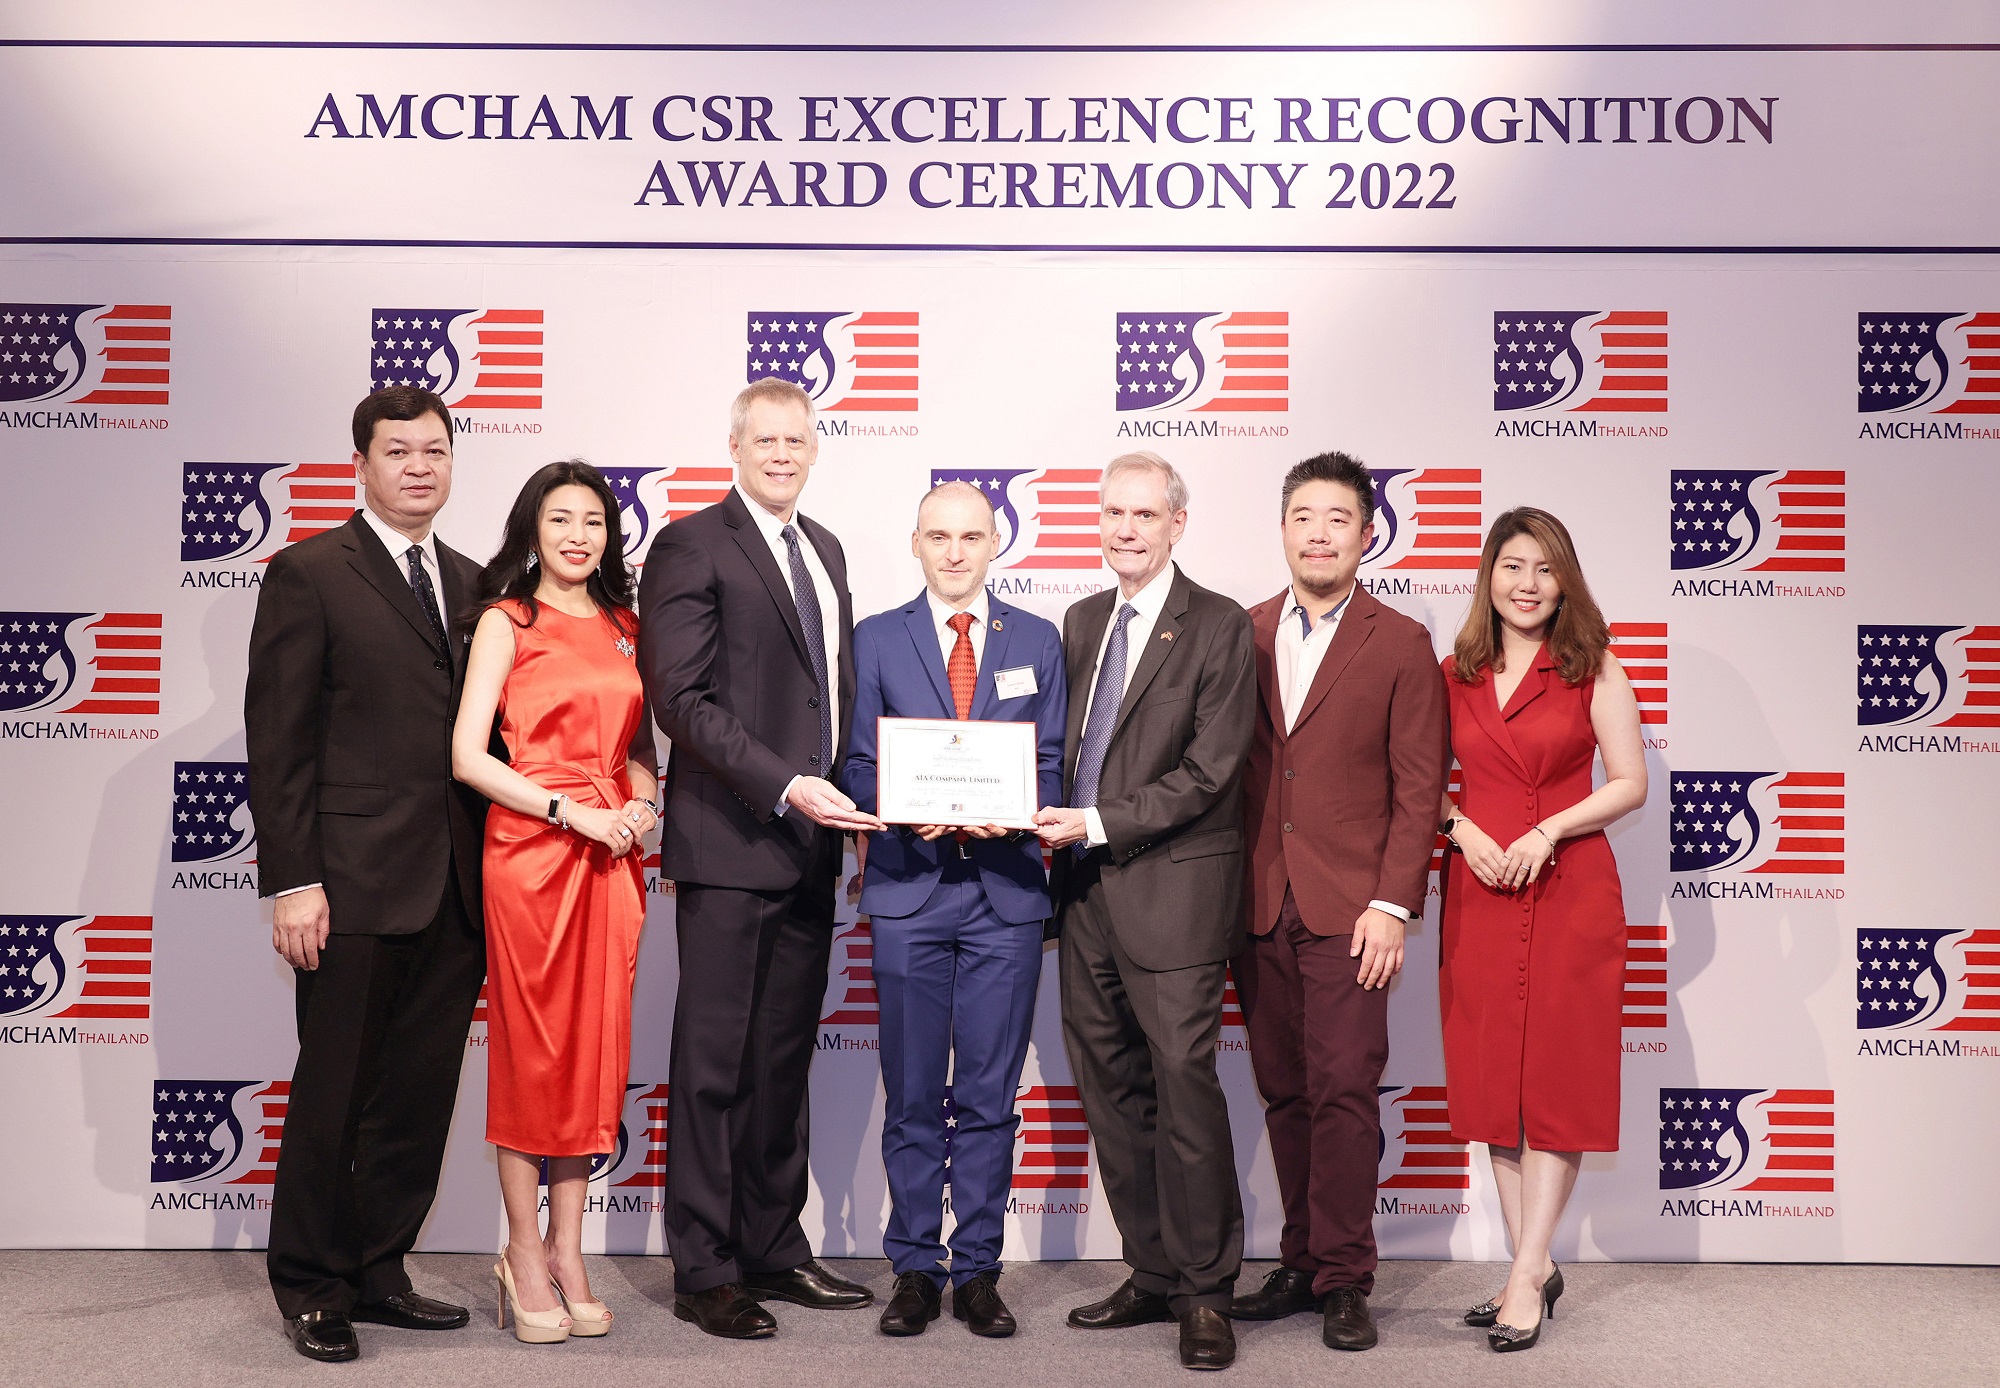 เอไอเอ ประเทศไทย รับรางวัลดีเด่นด้านกิจการเพื่อสังคม จากสภาหอการค้าอเมริกัน (AMCHAM CSR Excellence Recognition Award) เป็นปีที่ 11 ติดต่อกัน